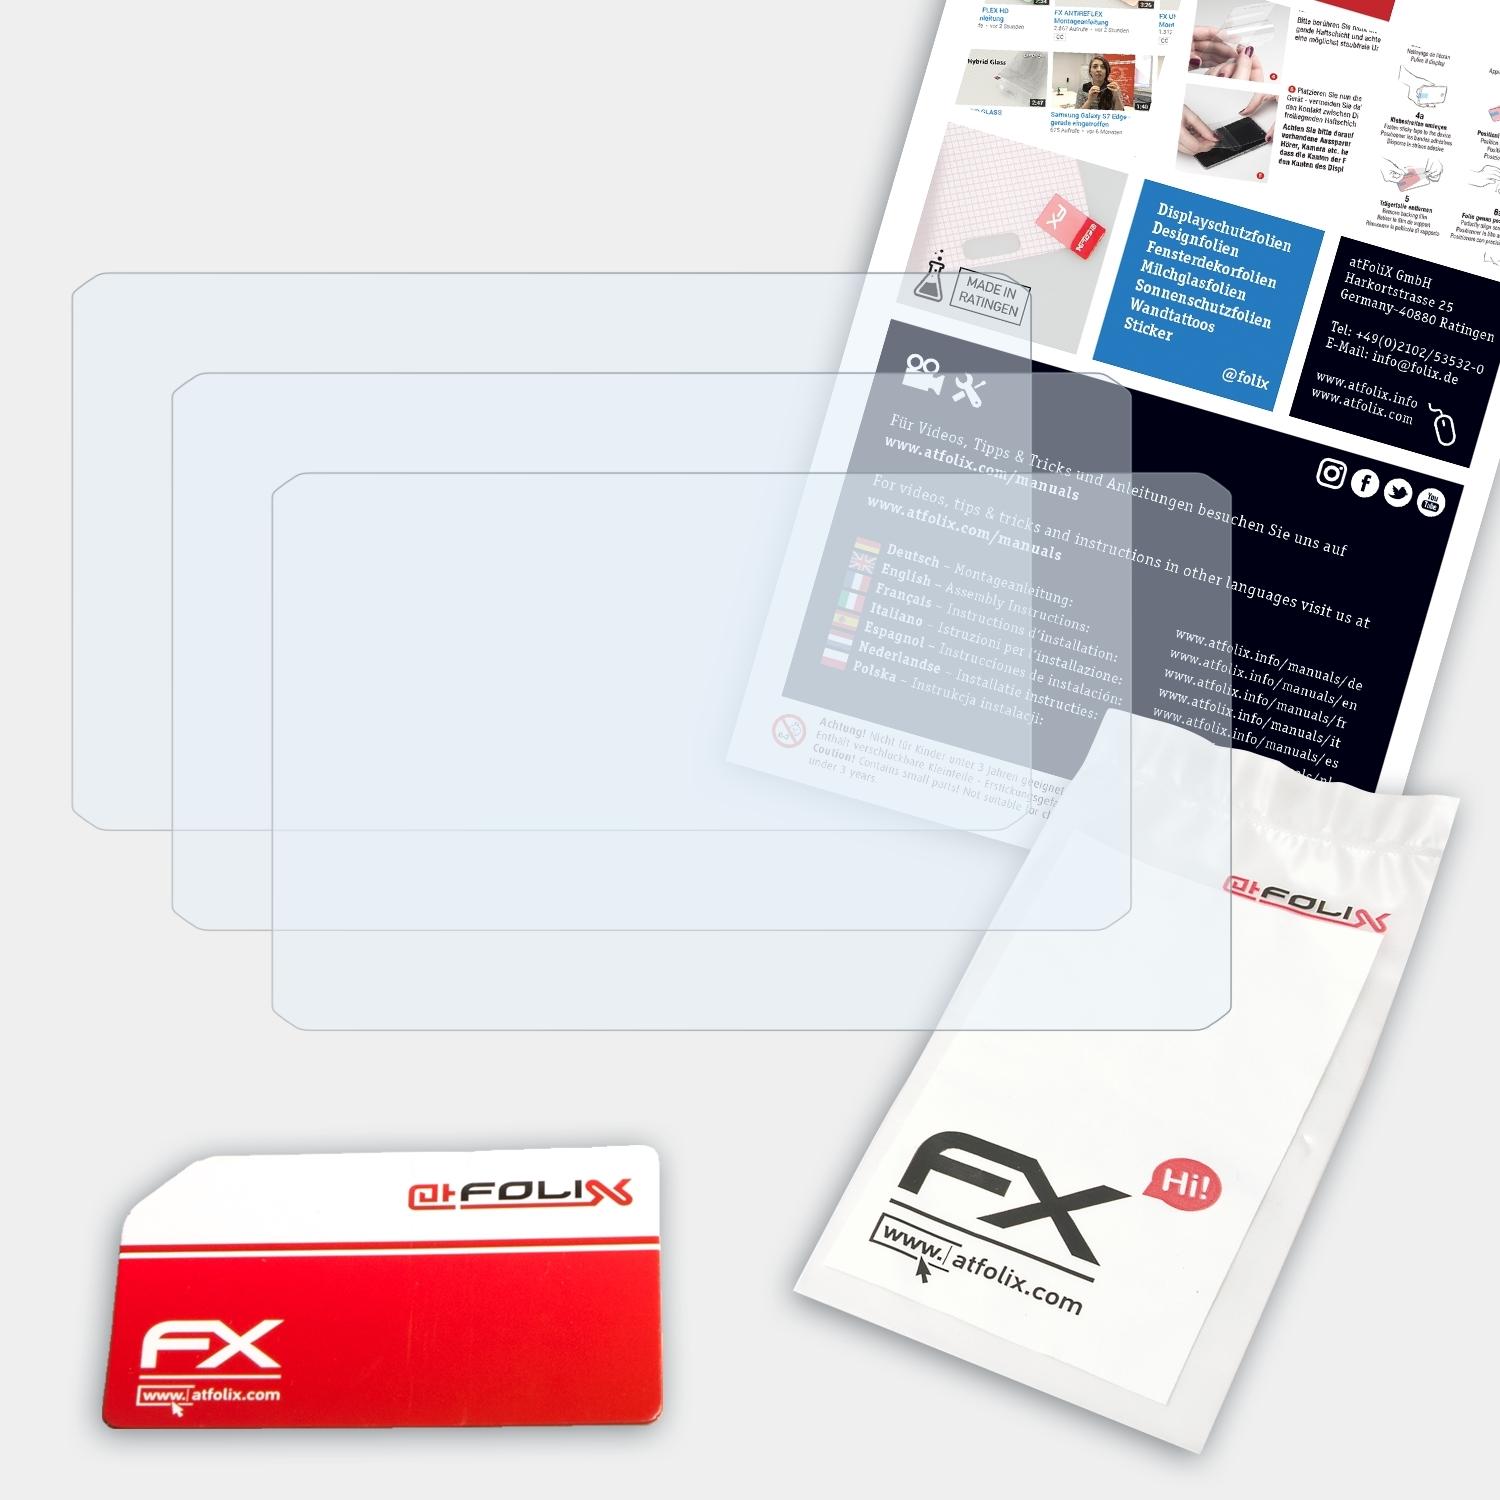 ATFOLIX 3x FX-Clear Displayschutz(für dezl LGV700) Garmin